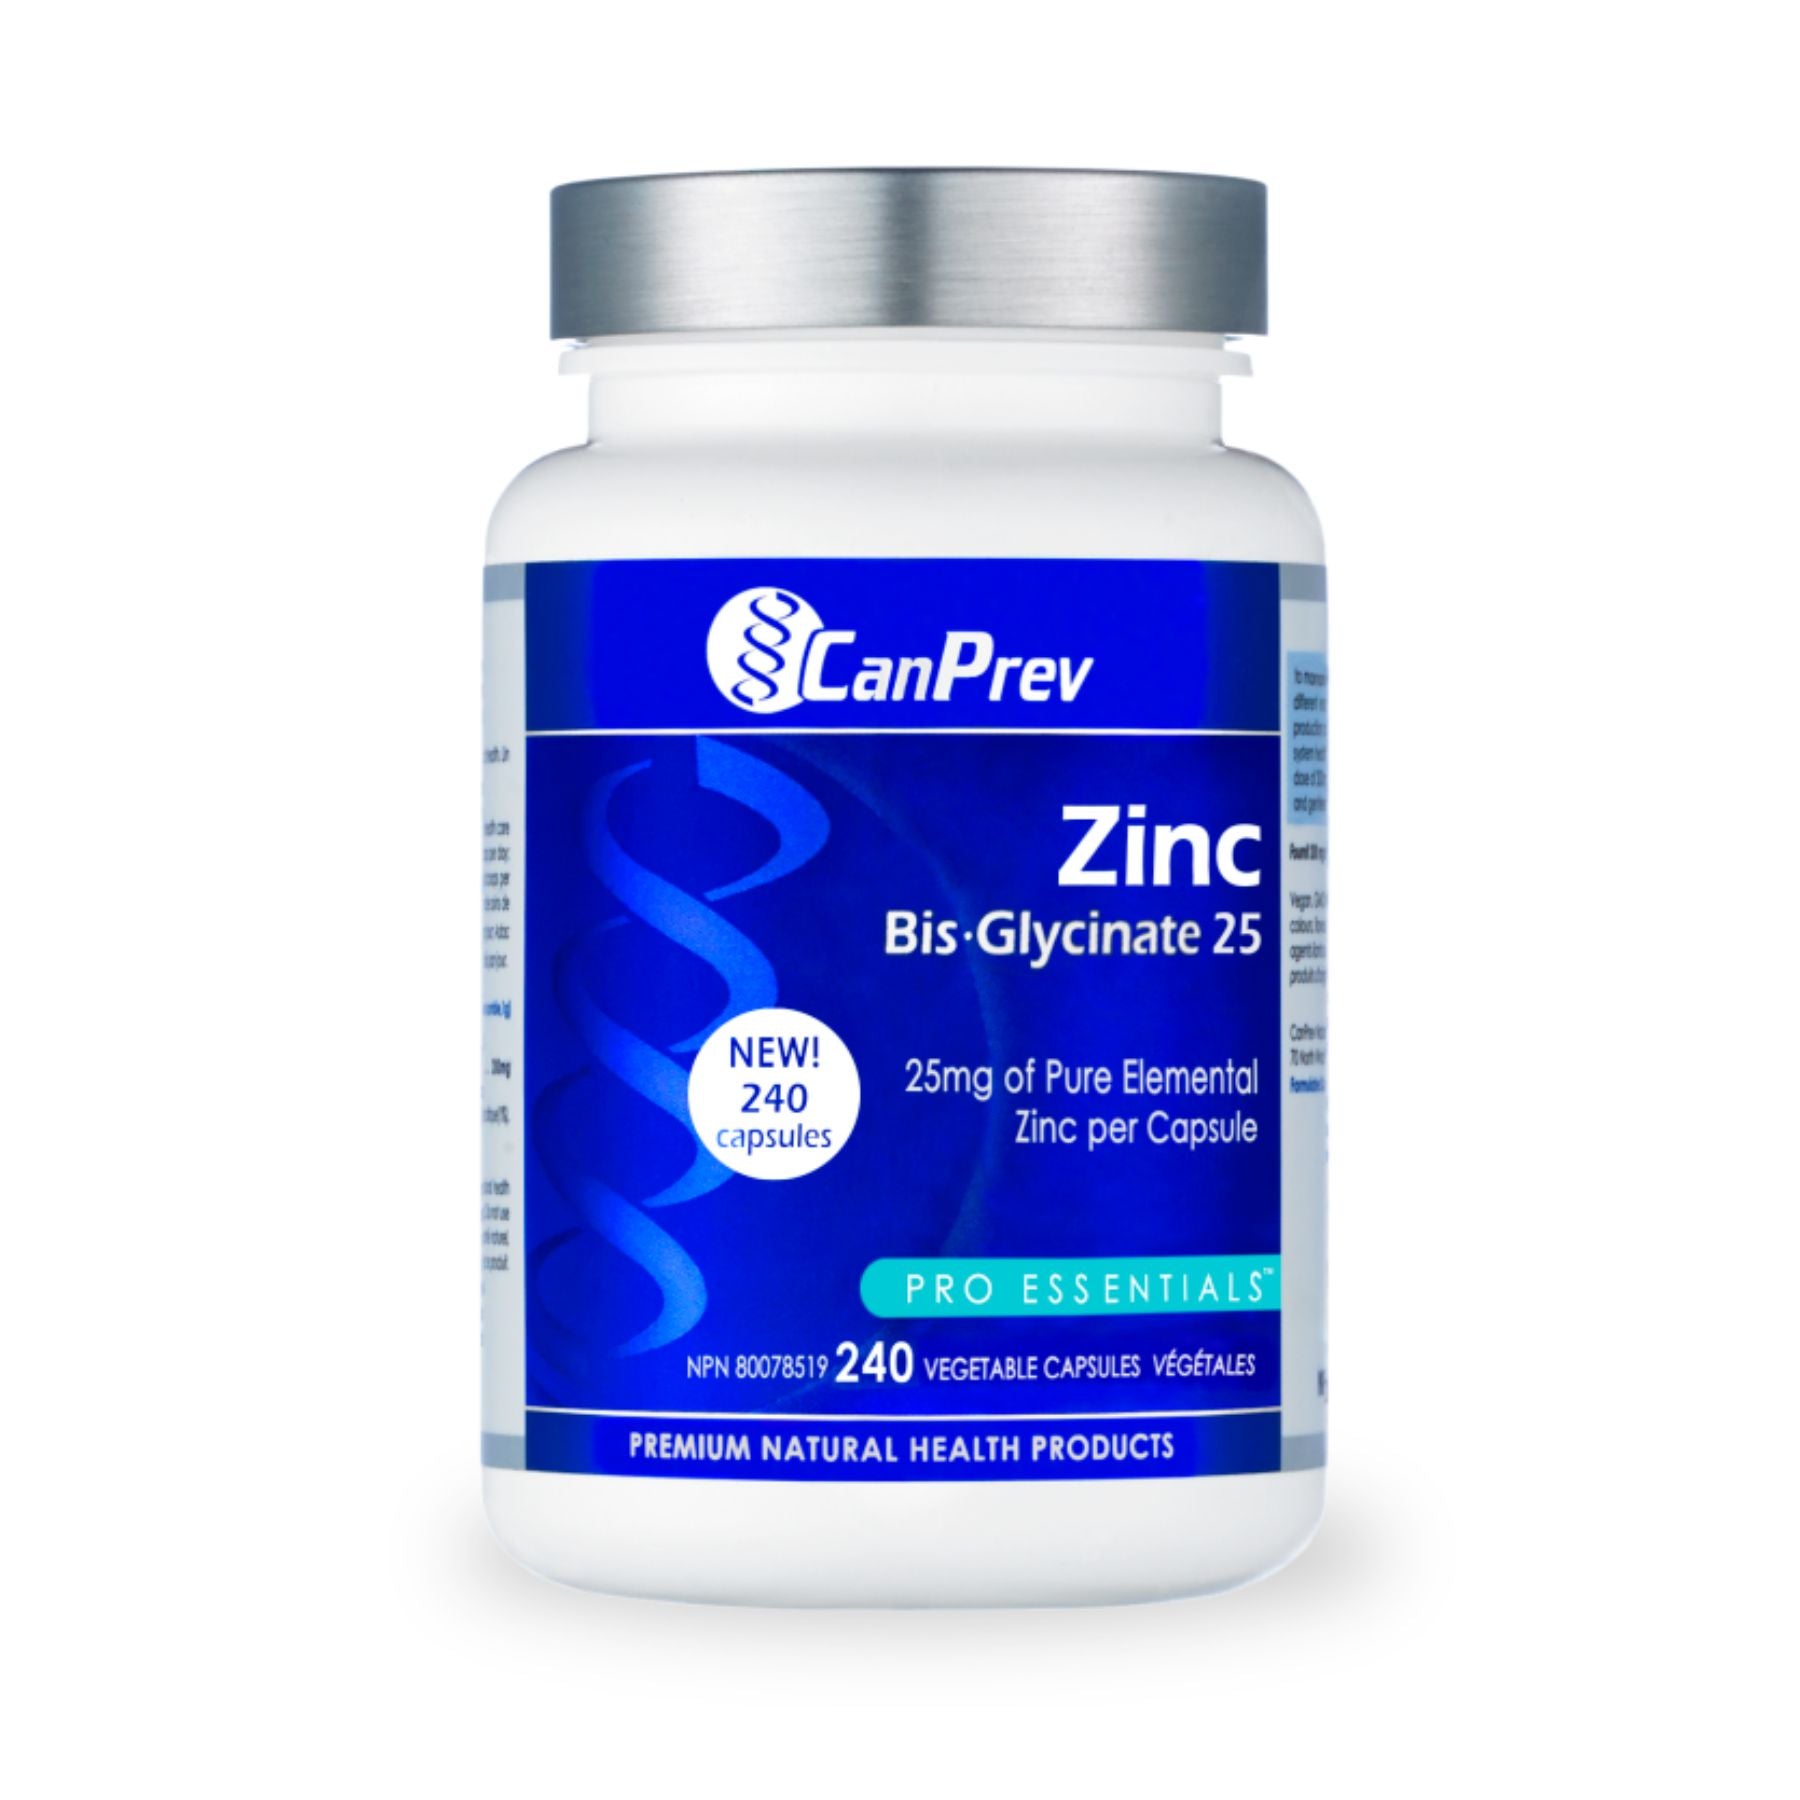 CanPrev Zinc Bis-Glycinate 25mg 240s